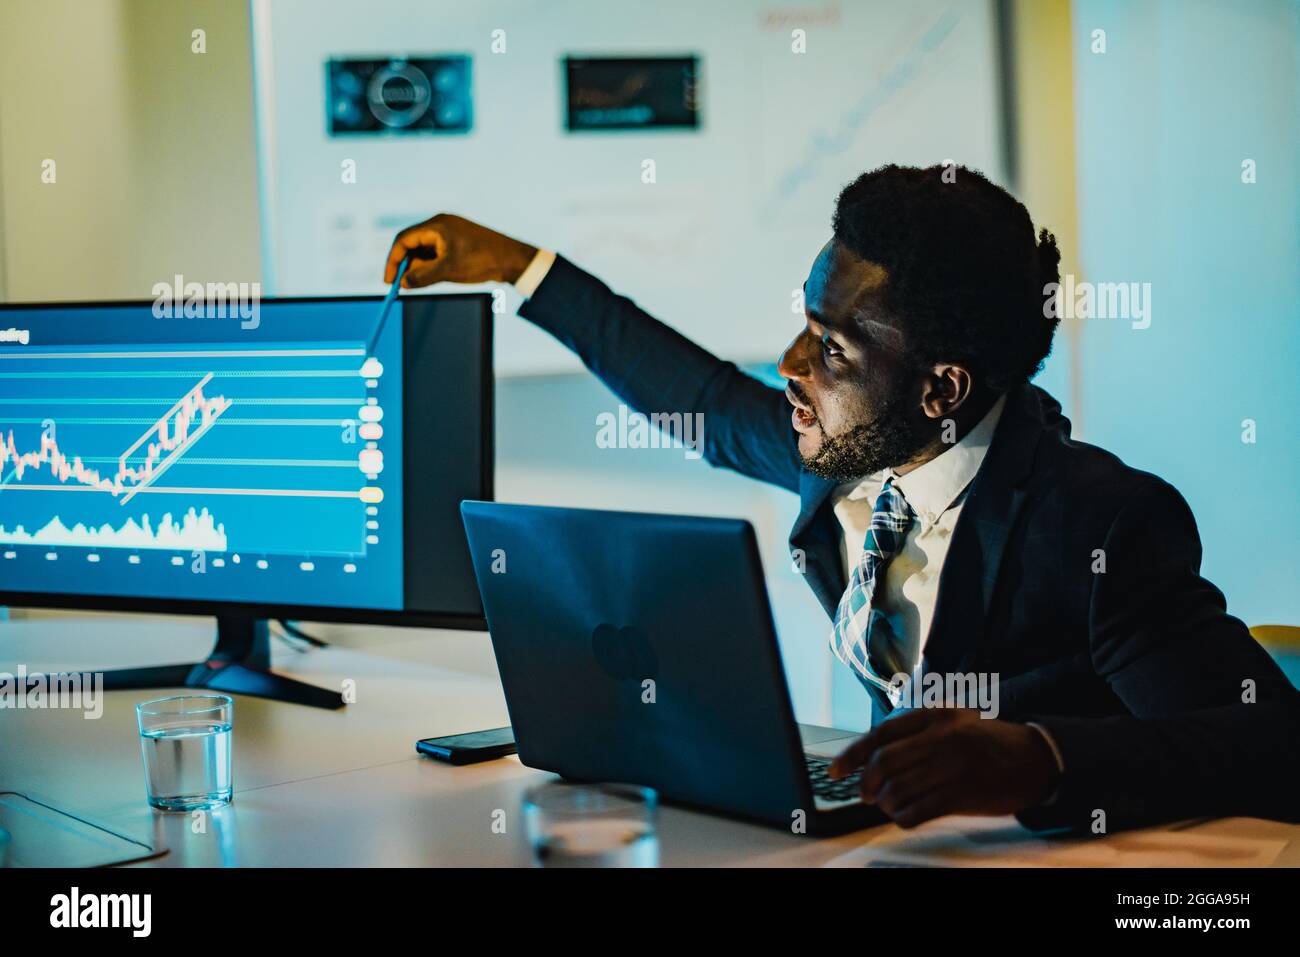 L'uomo africano che fa l'analisi della criptovaluta all'interno della banca - Focus on Face Foto Stock